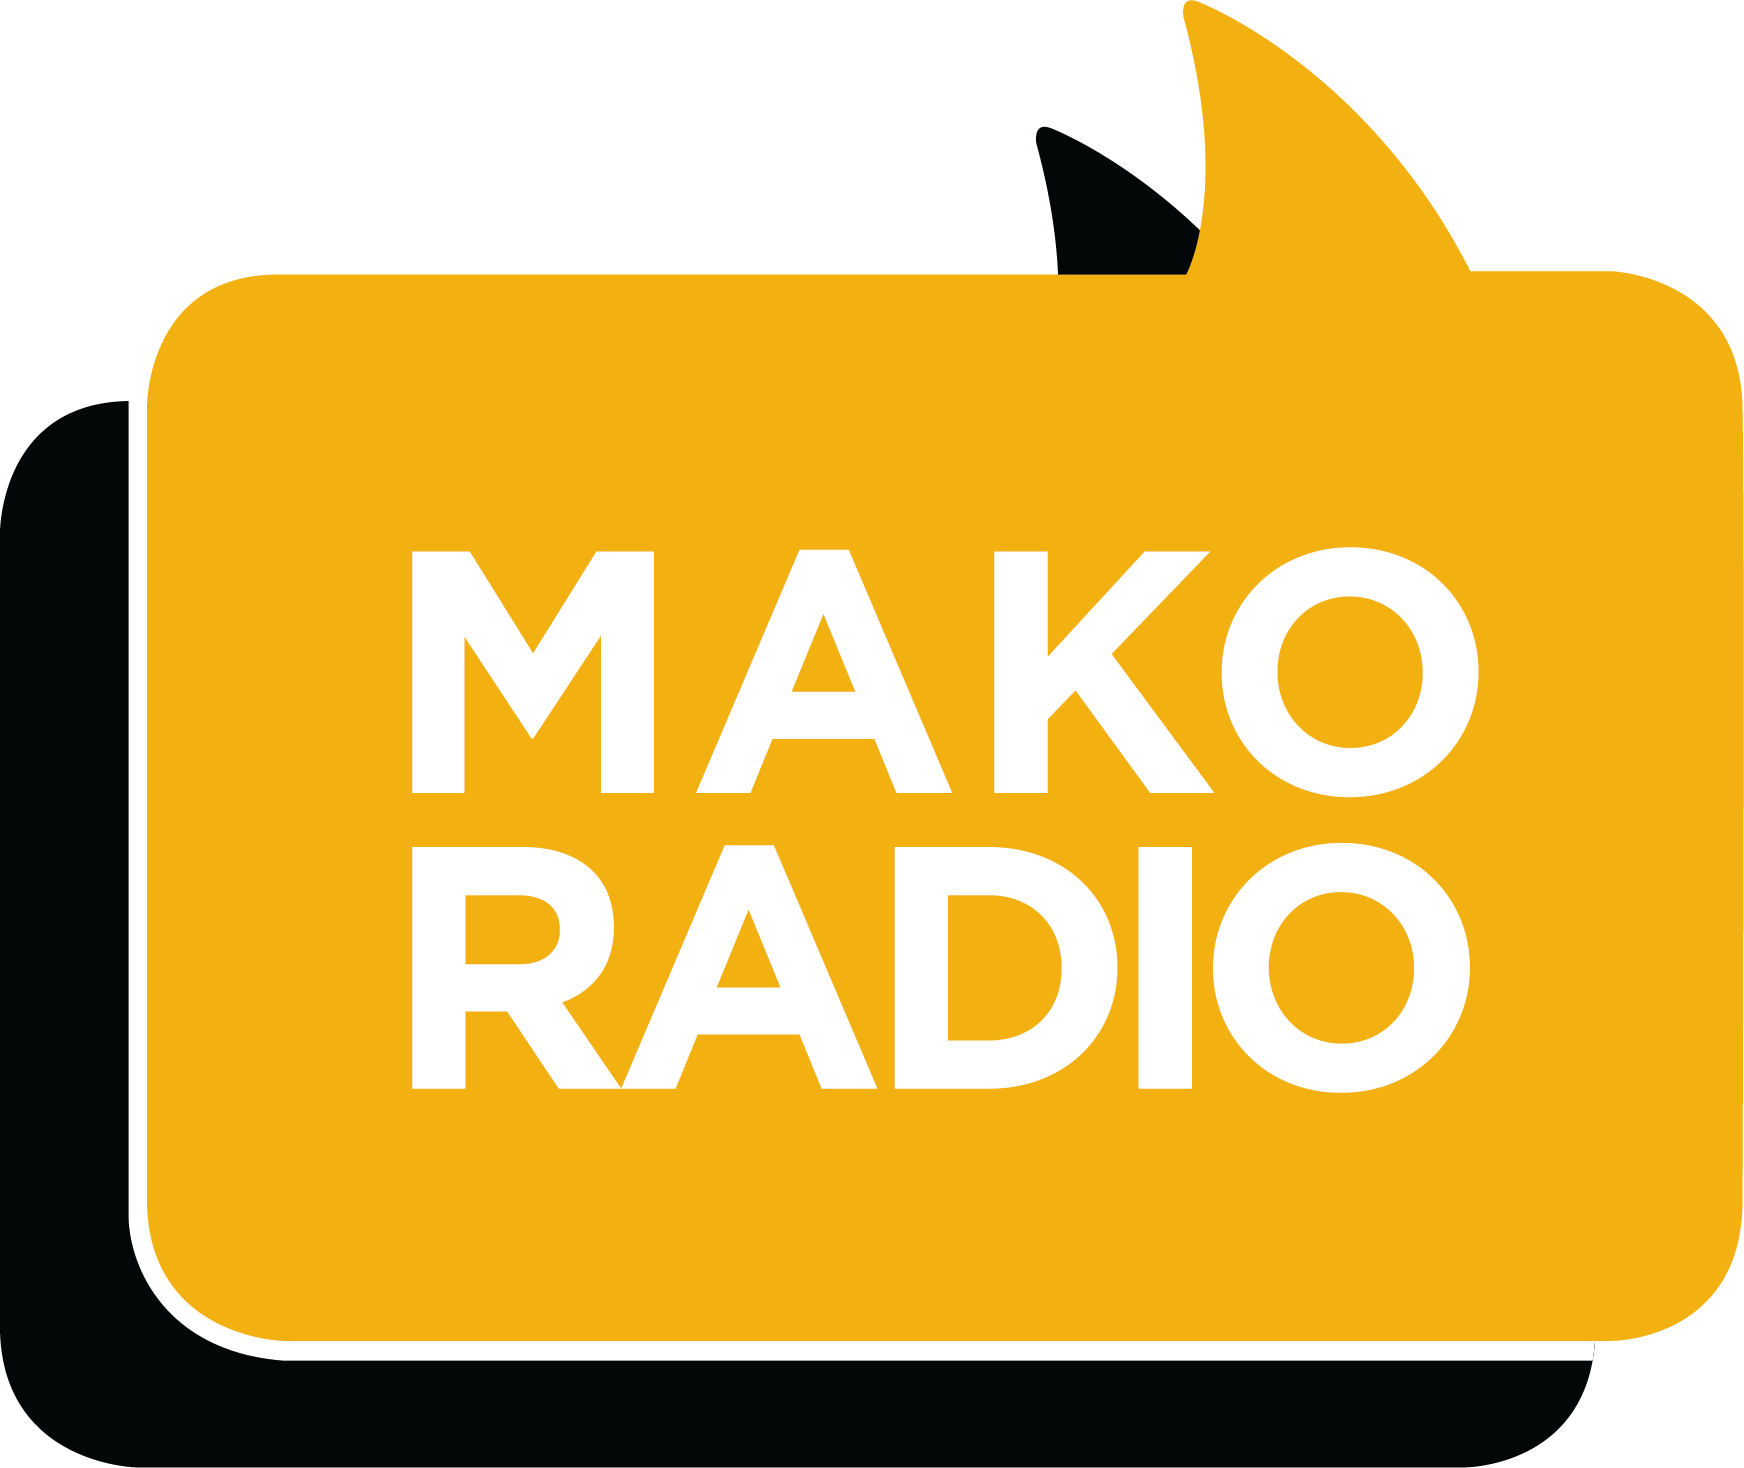 Mako Radio